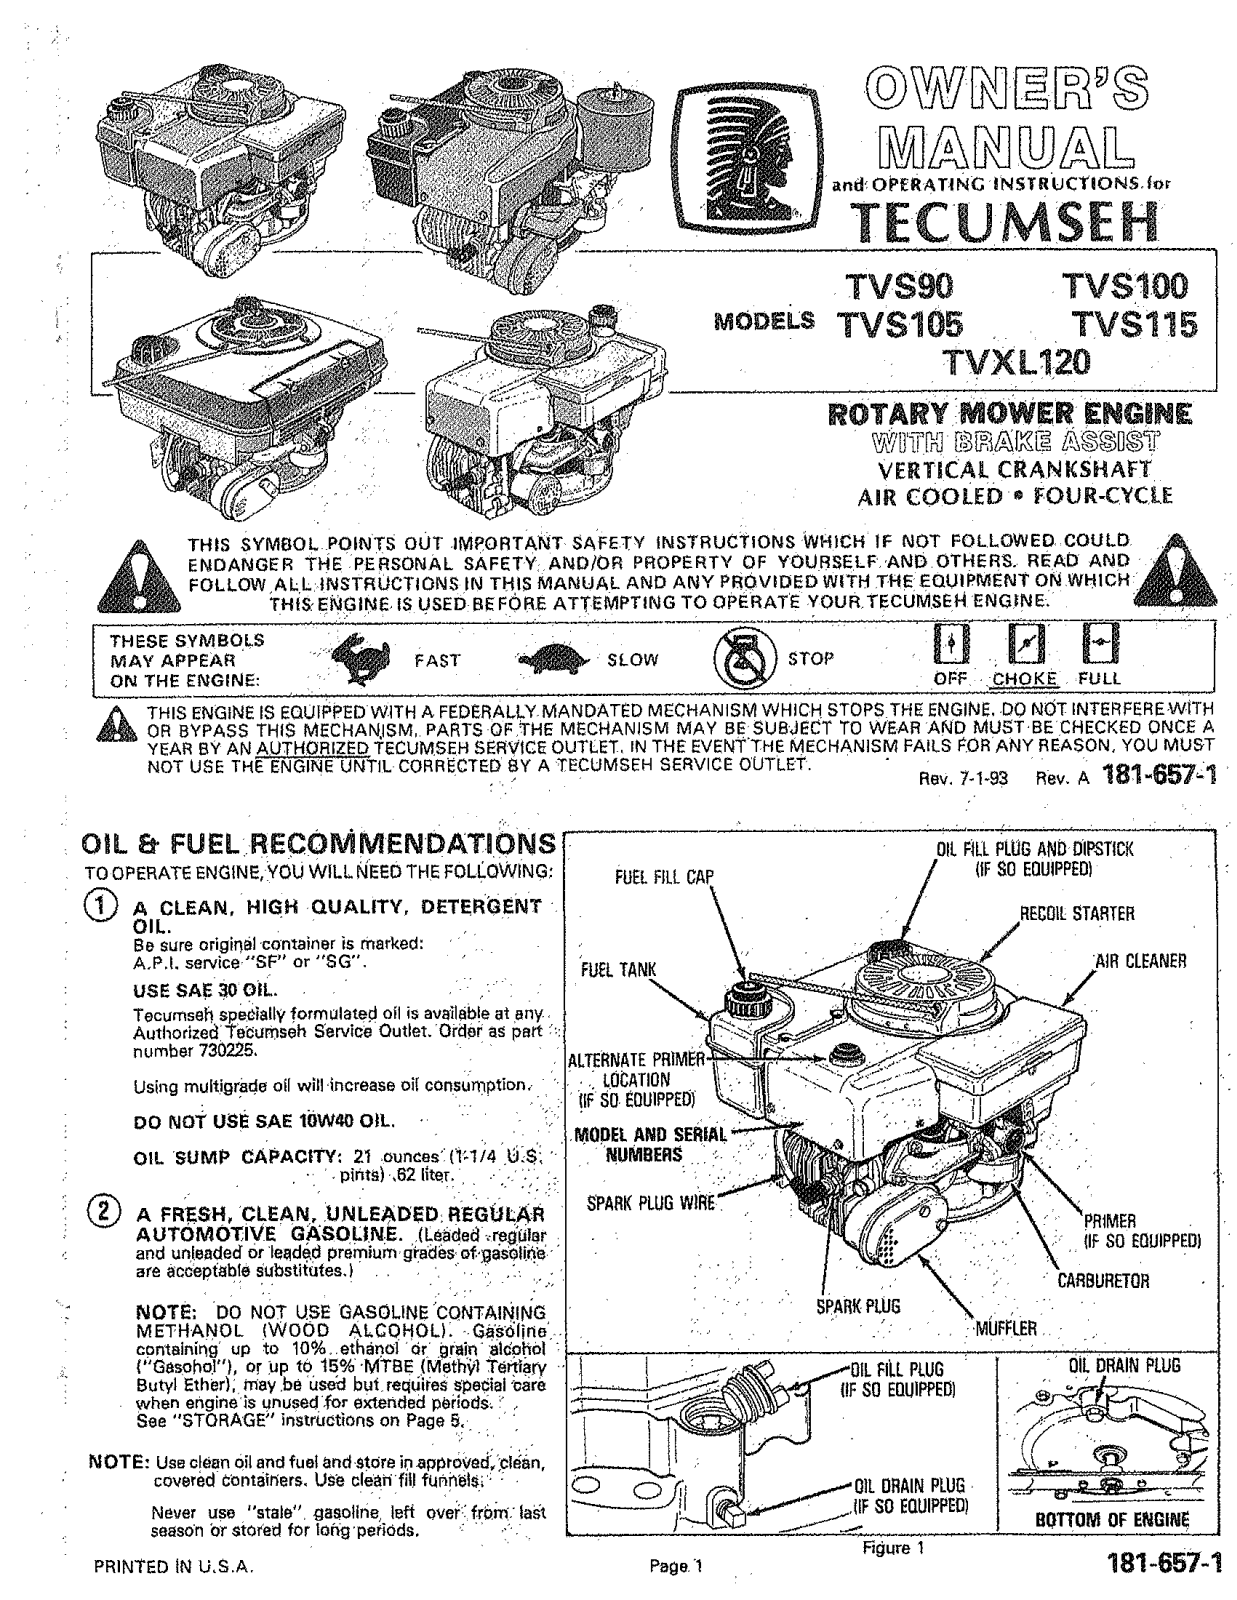 tecumseh tvs90, tvs105, tvxl120, tvs100, tvs115 owners Manual